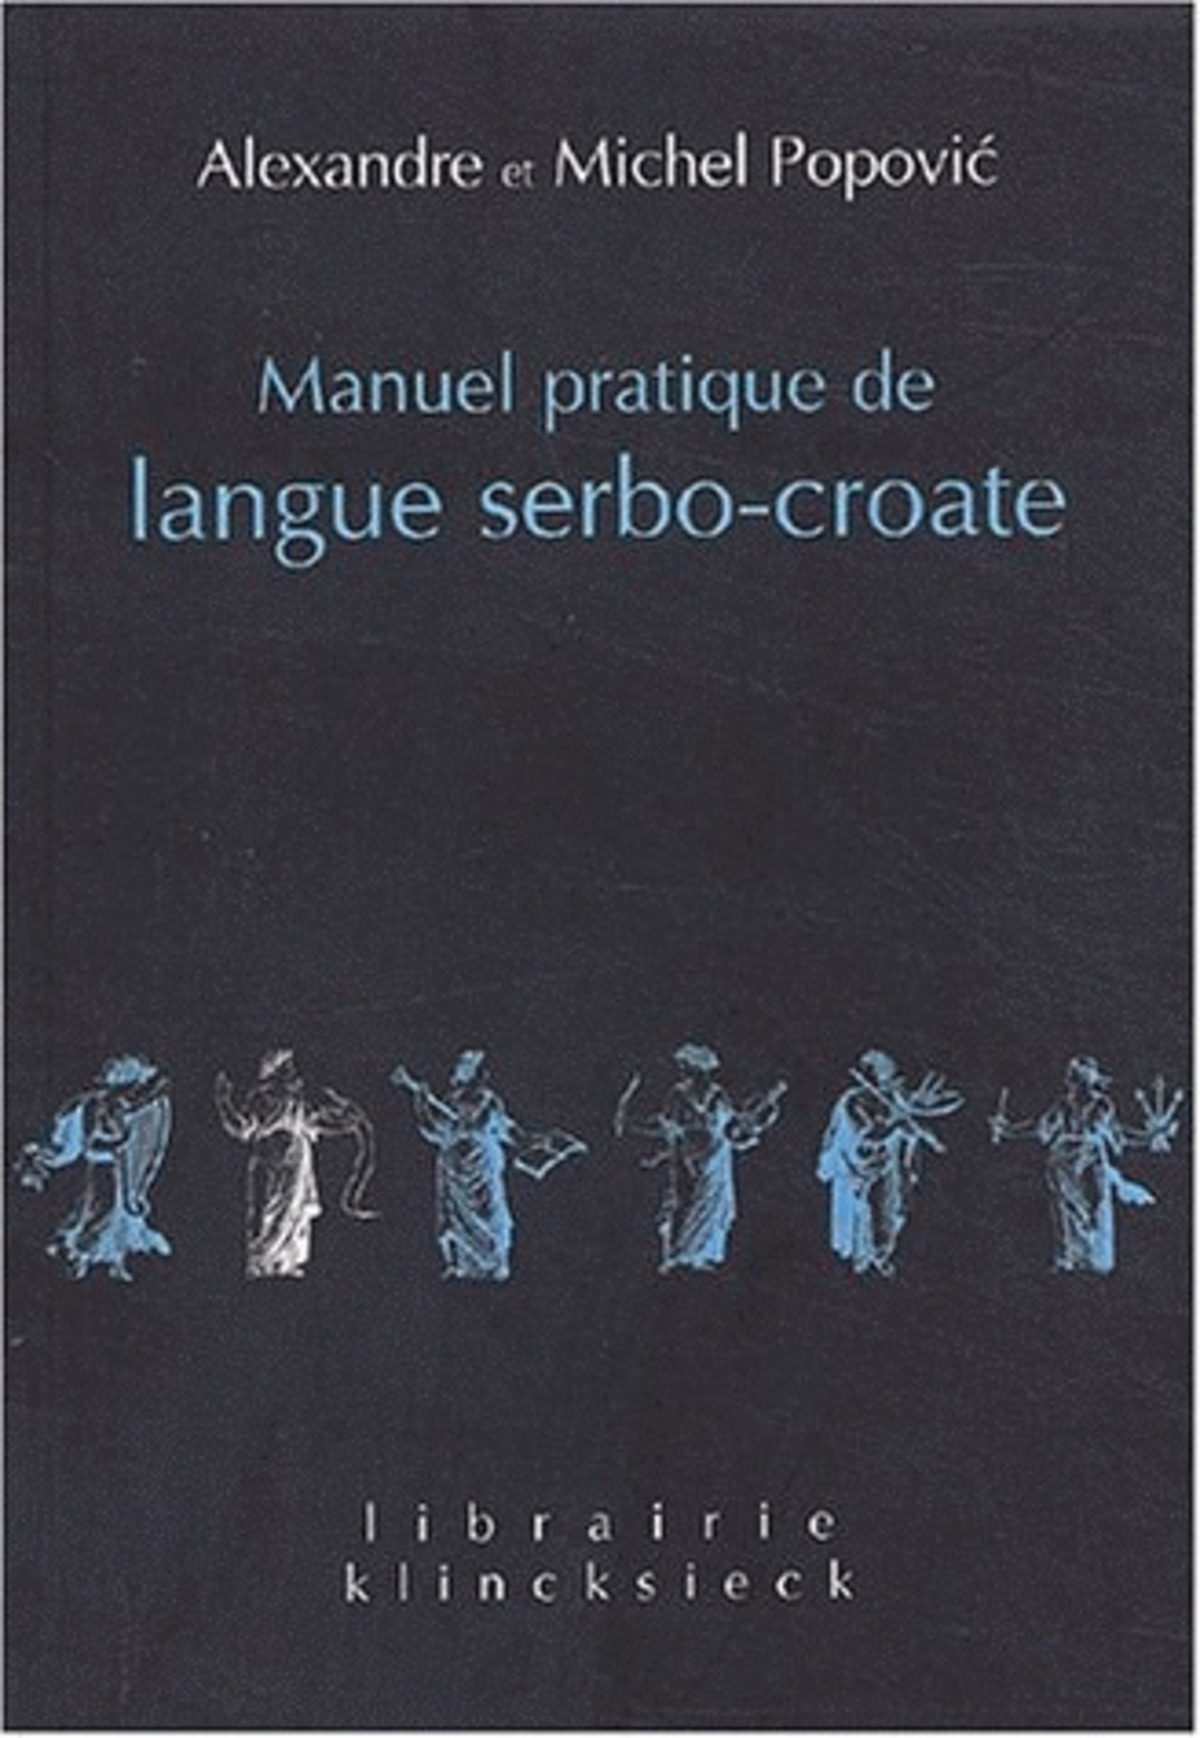 Manuel pratique de langue serbo-croate